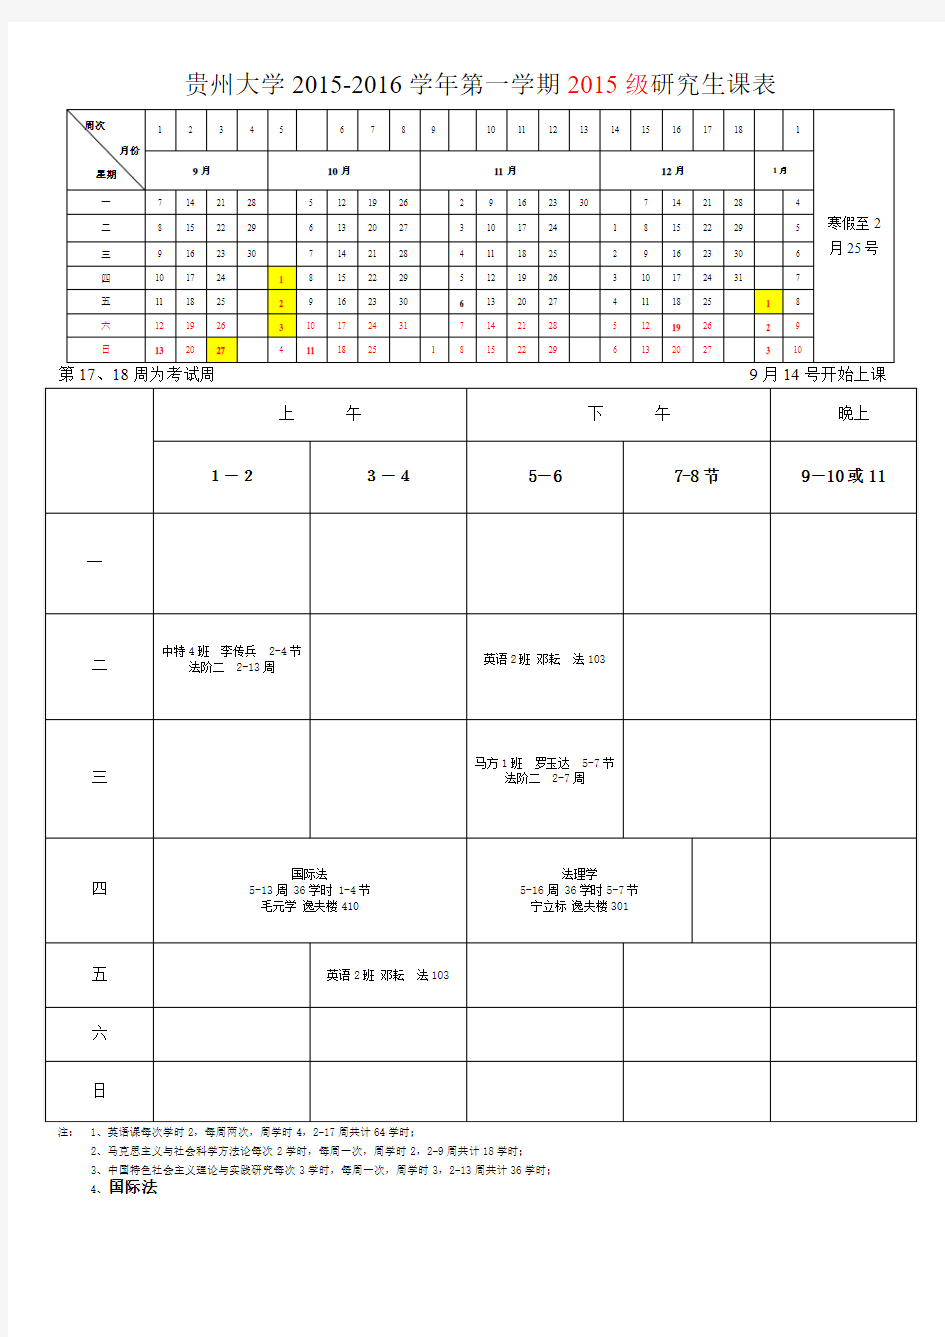 贵州大学2012016学年第一学期2015级研究生课表